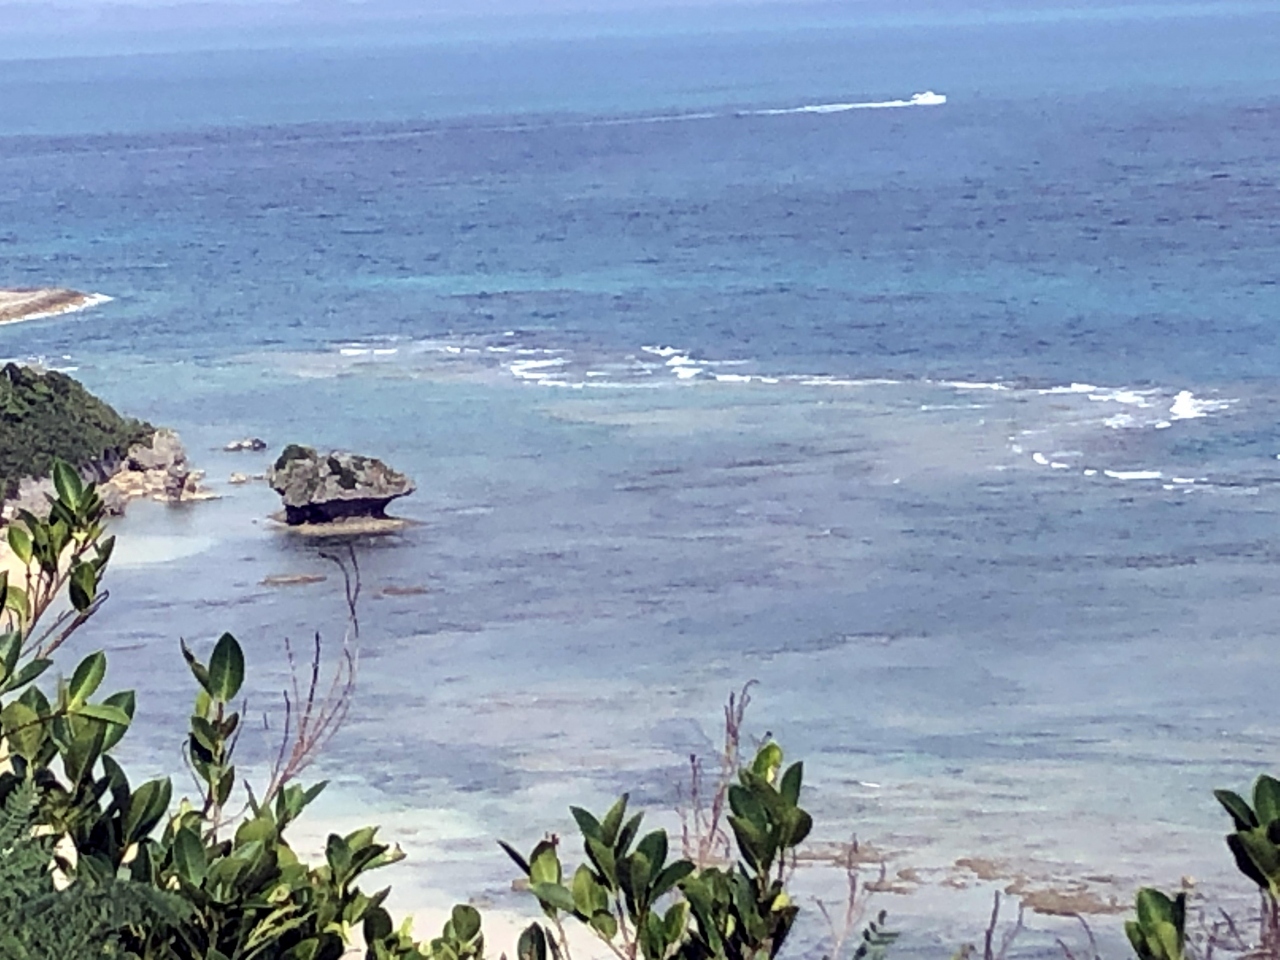 岬からは、きのこ岩も見ることができました。

沖合2ｷﾛ程に浮かぶｺﾏｶ島は、美しい白い砂浜に囲まれた周囲800メートルの無人島で、透明度が高く、沖縄でも有数の美しさらしいです。